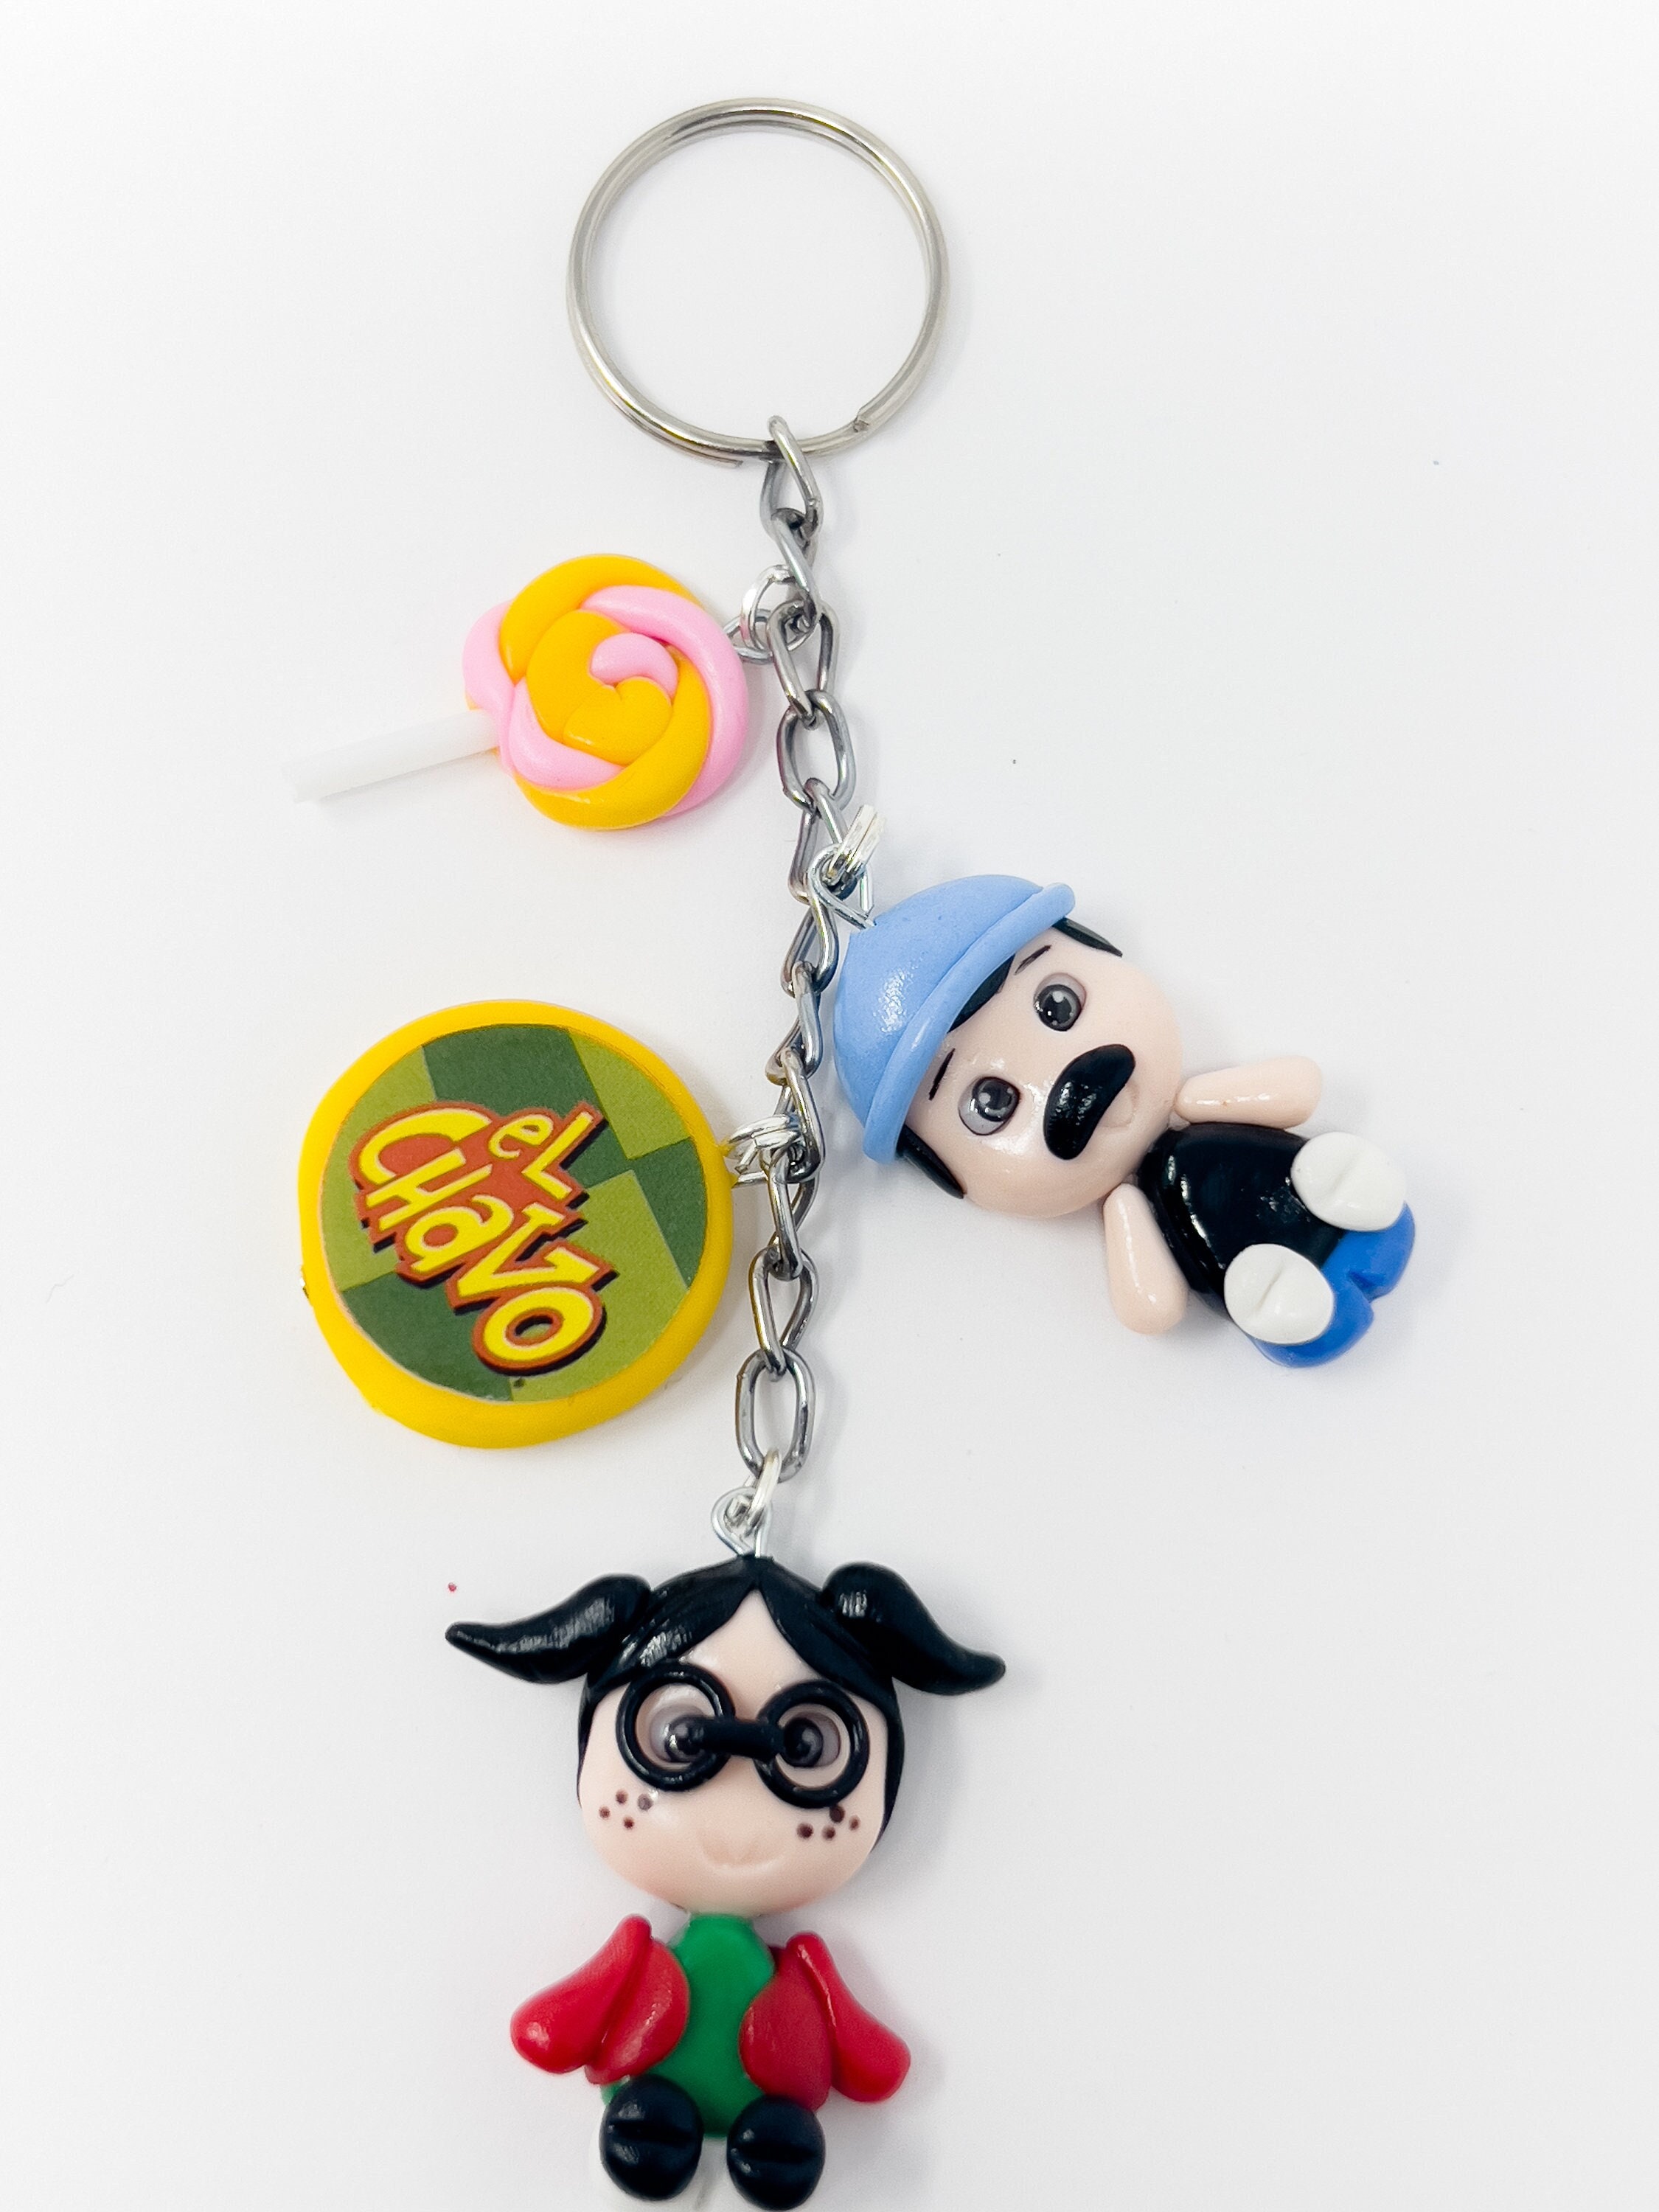 Funny El Chavo Del Ocho llavero Anime Silicone Green Boy Doll Keychain  Creative Car Keyring Adult Kids Cartoon Jewelry Gifts